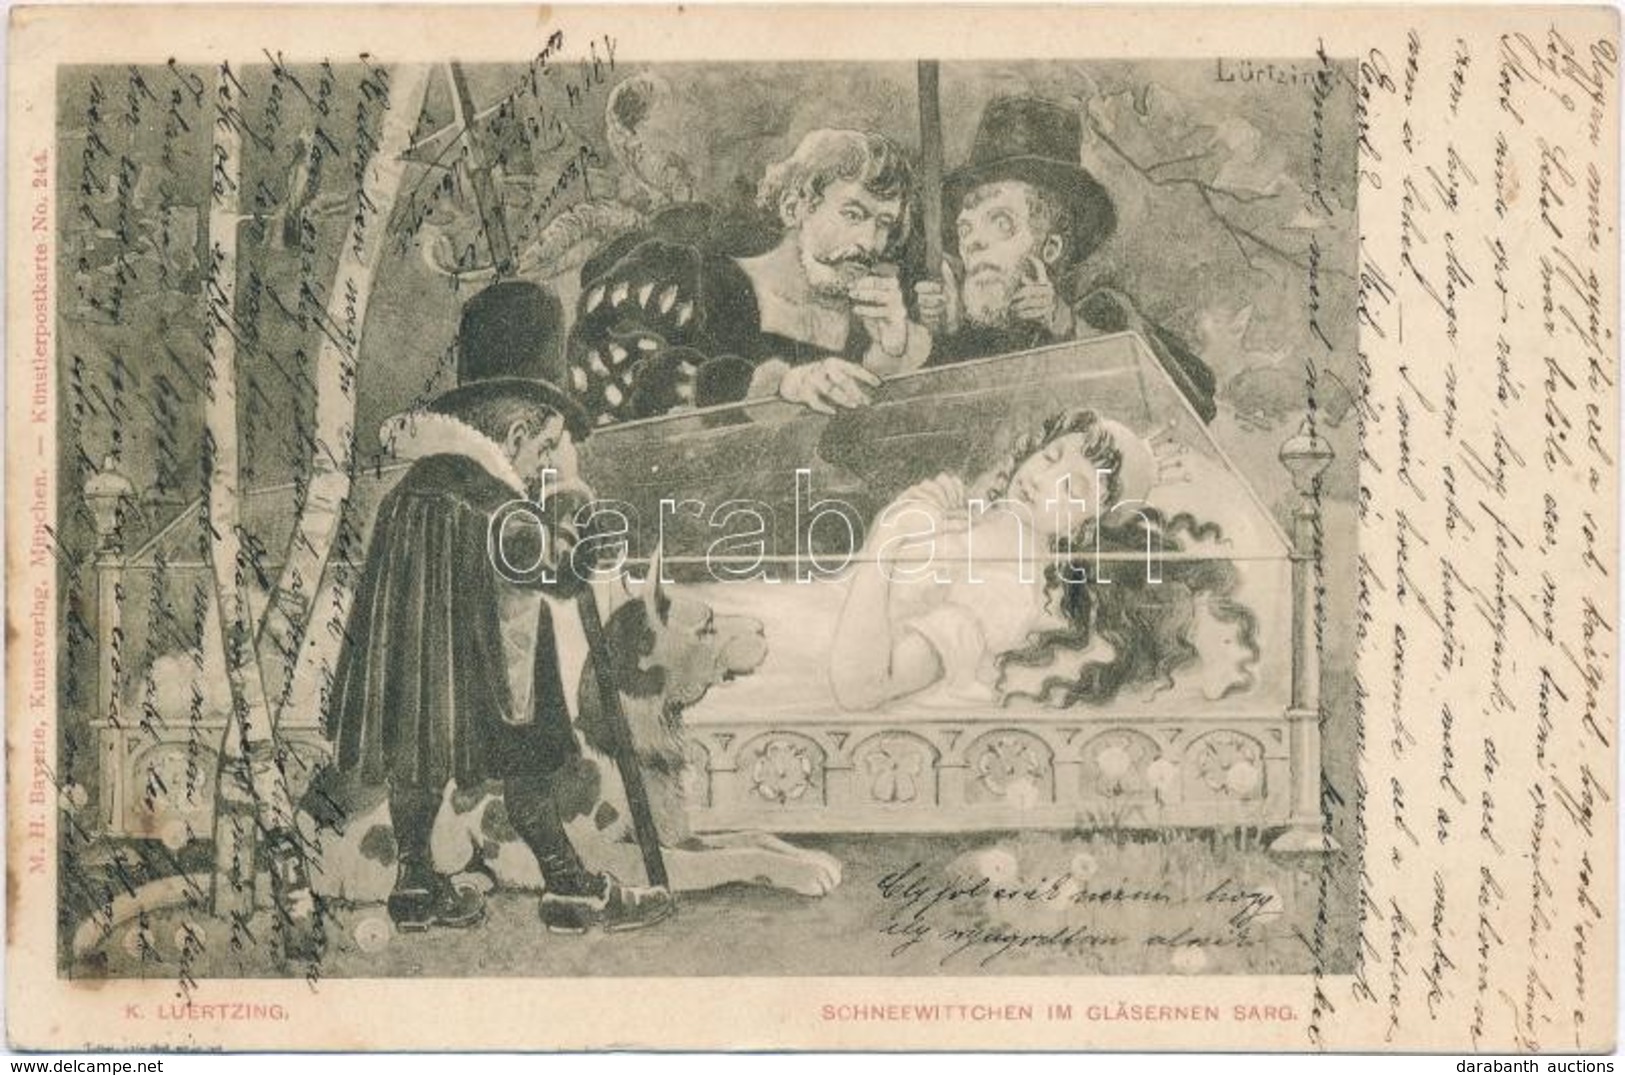 T2 1904 Schneewittchen Im Gläsernen Sarg / Snow White And The Seven Dwarfs. M.H. Bayerie Kunstverlag Künstlerpostkarte N - Ohne Zuordnung